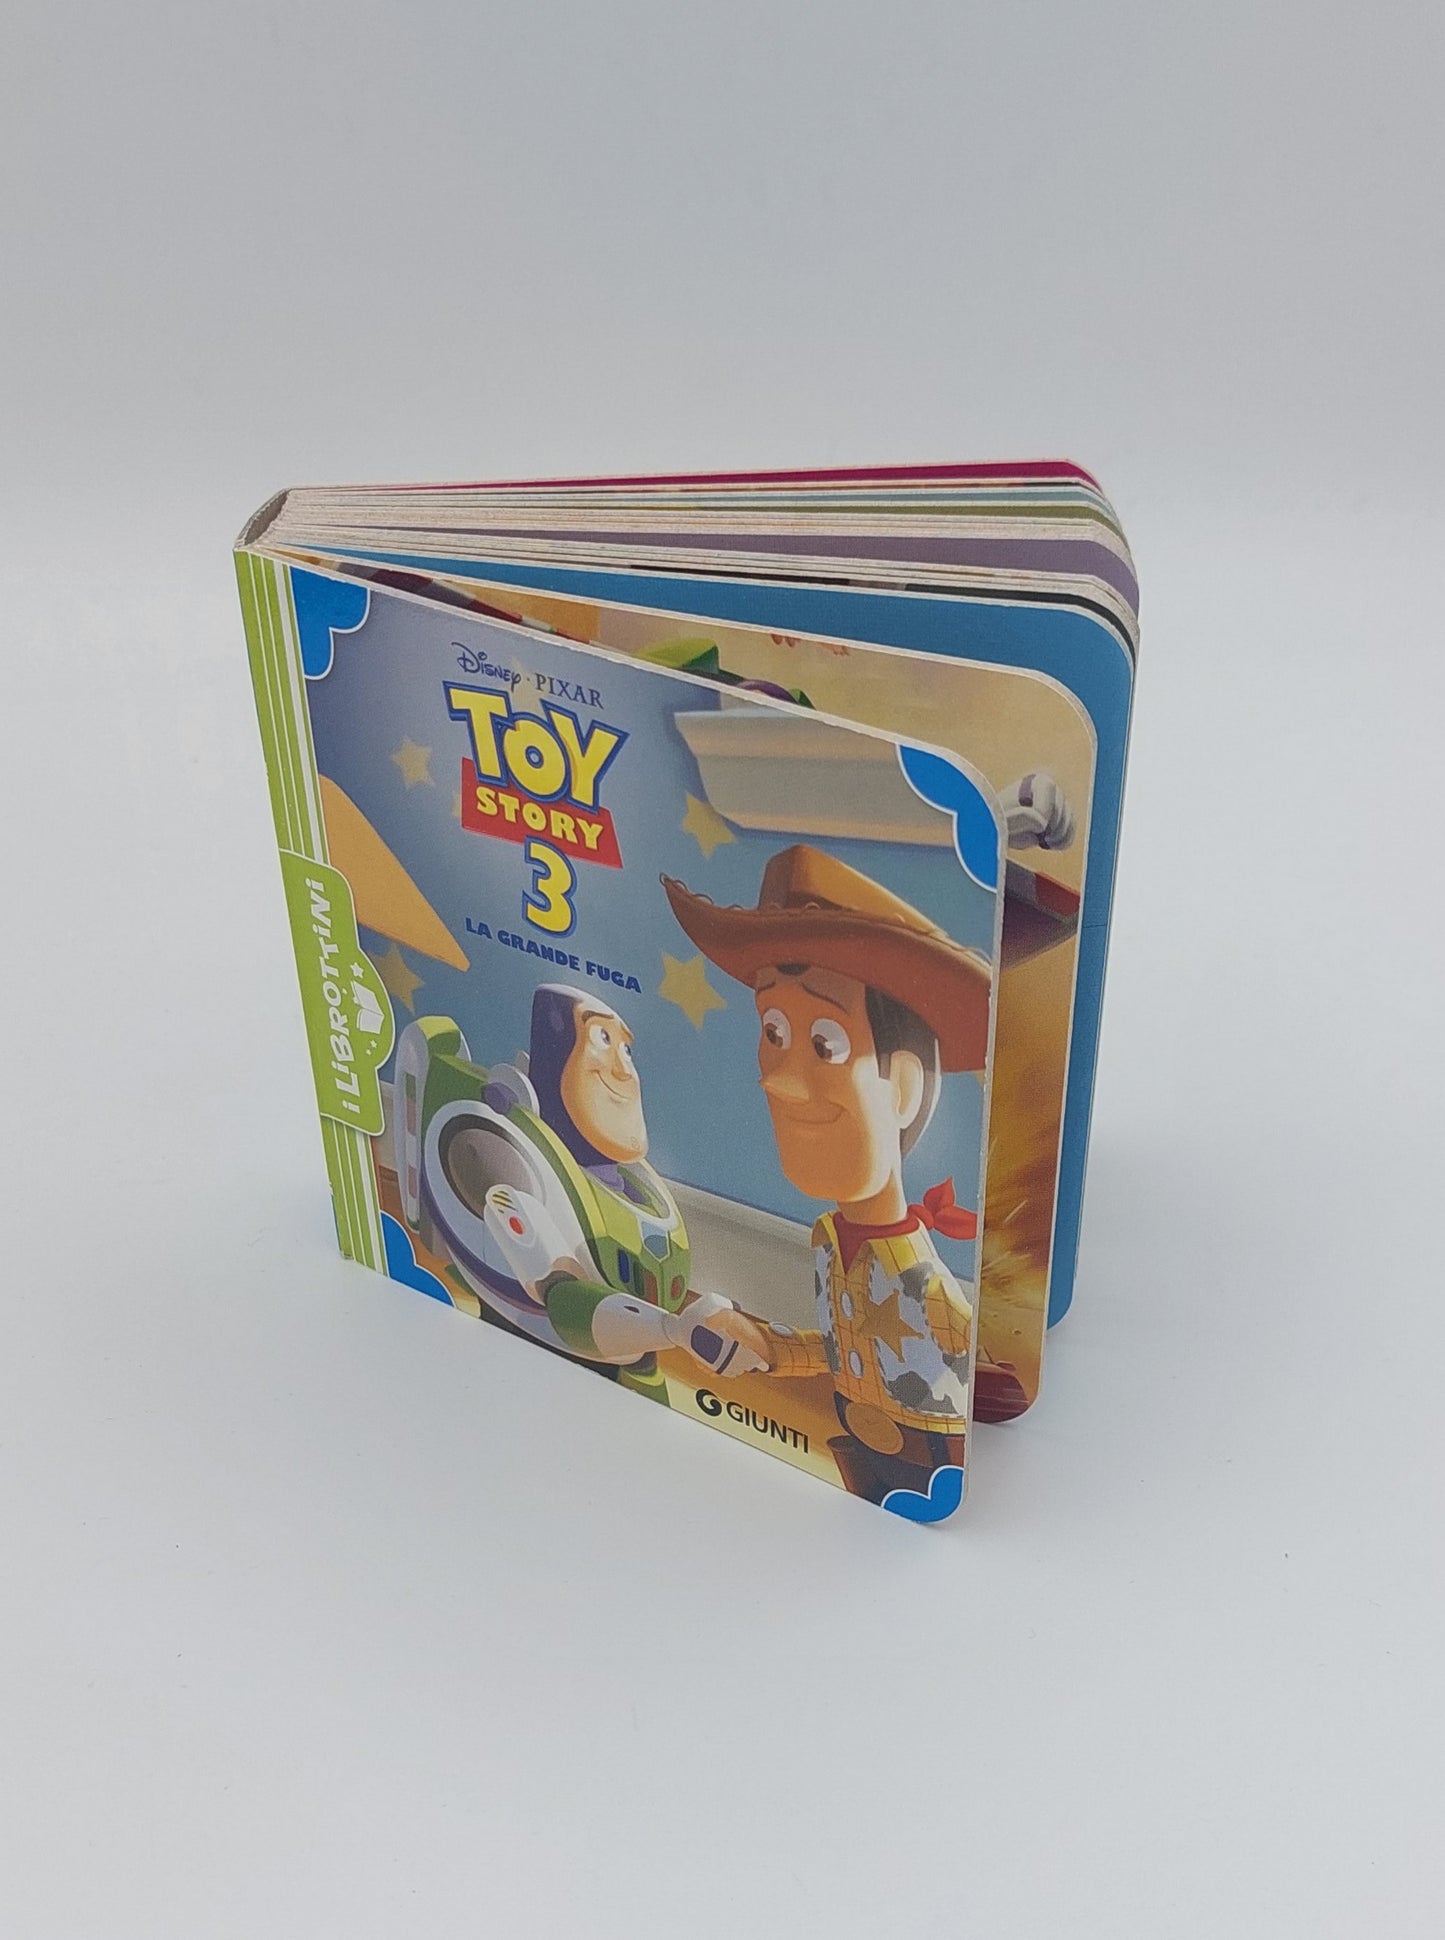 Toy Story 3. La grande fuga - I Librottini